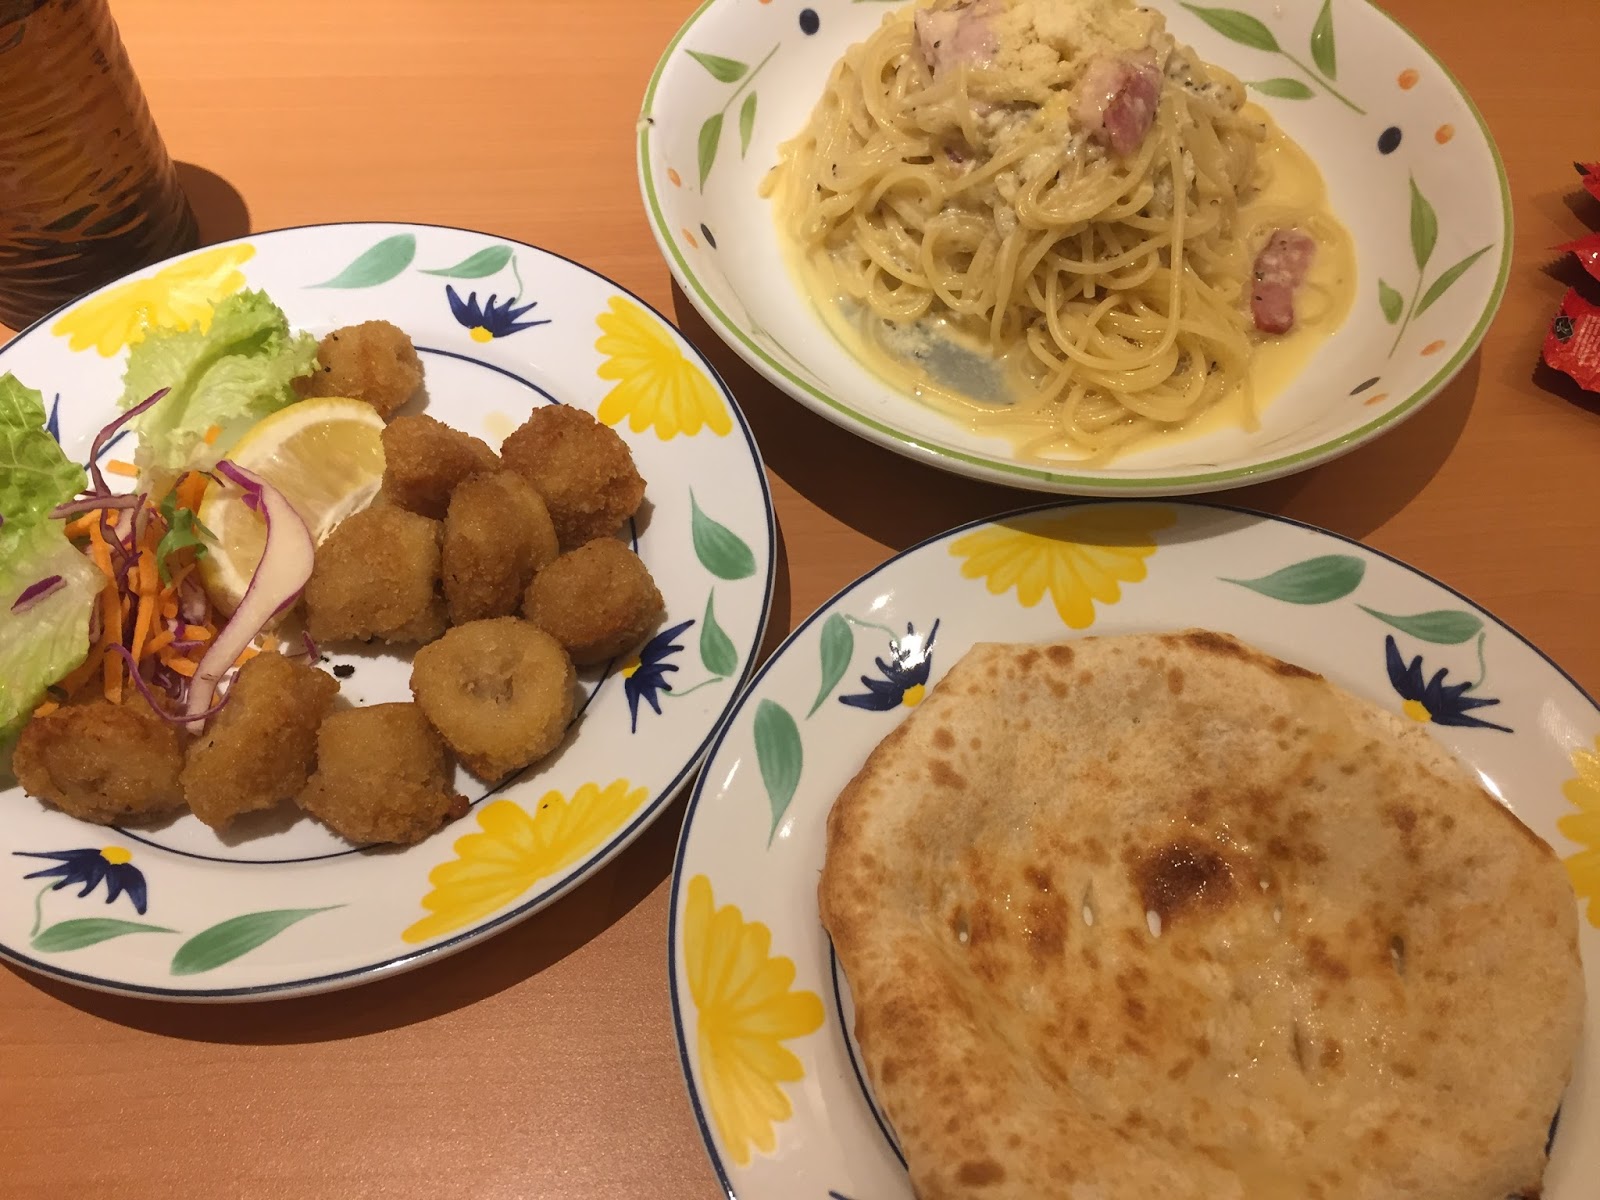 [random] JB dayout + dinner-date at Saizeriya